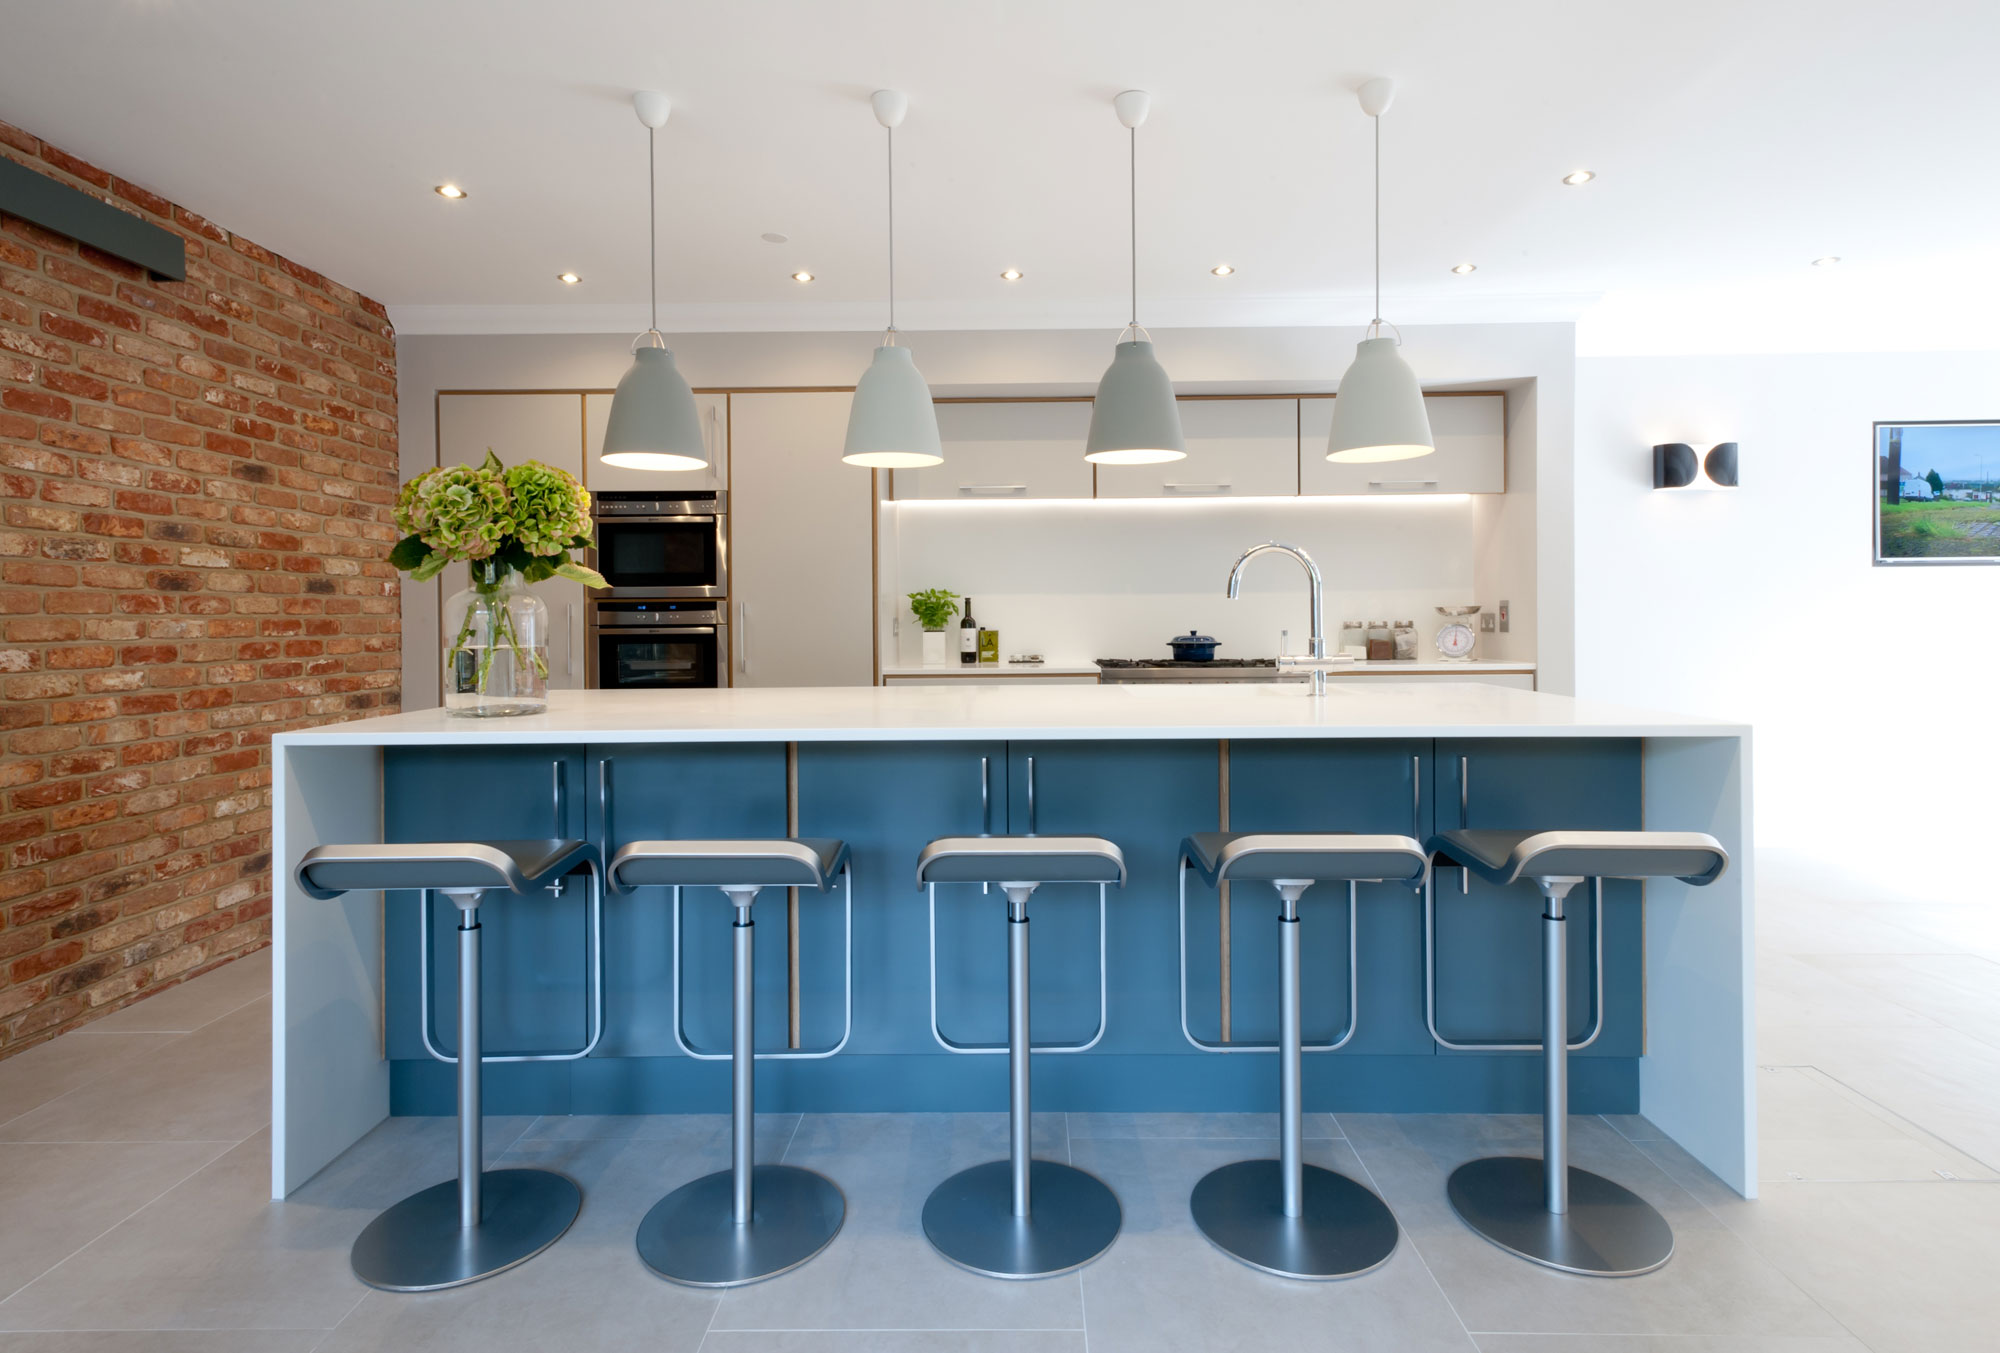 Turquoise Kitchen - Welford-on-Avon - Koivu Kitchens